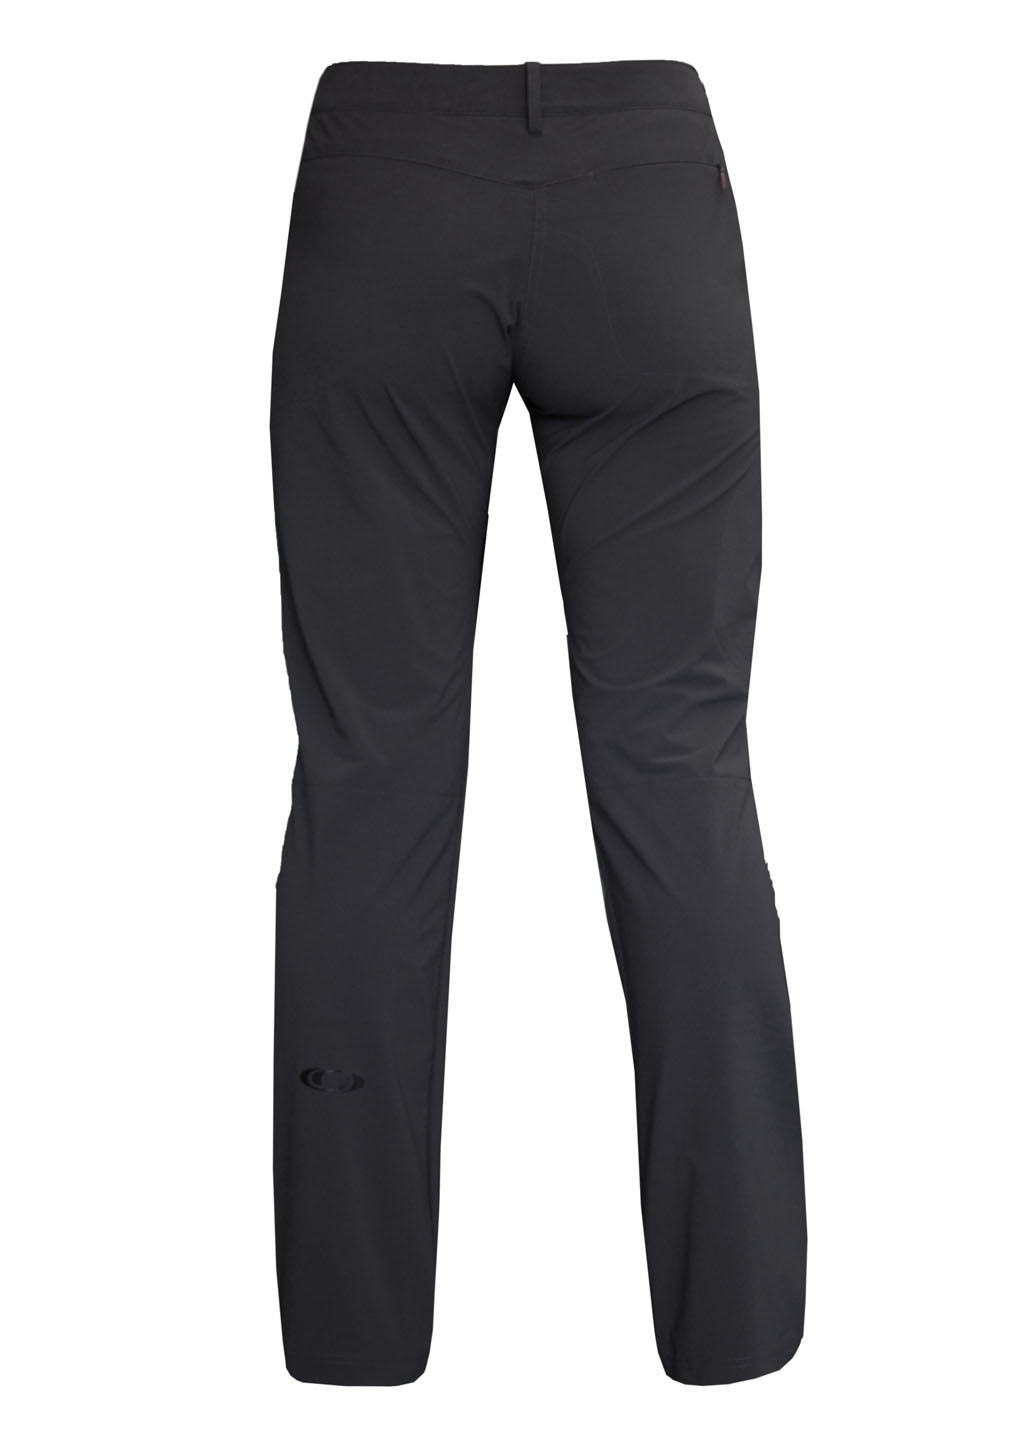 Темно-серые спортивные демисезонные с высокой талией брюки Salomon